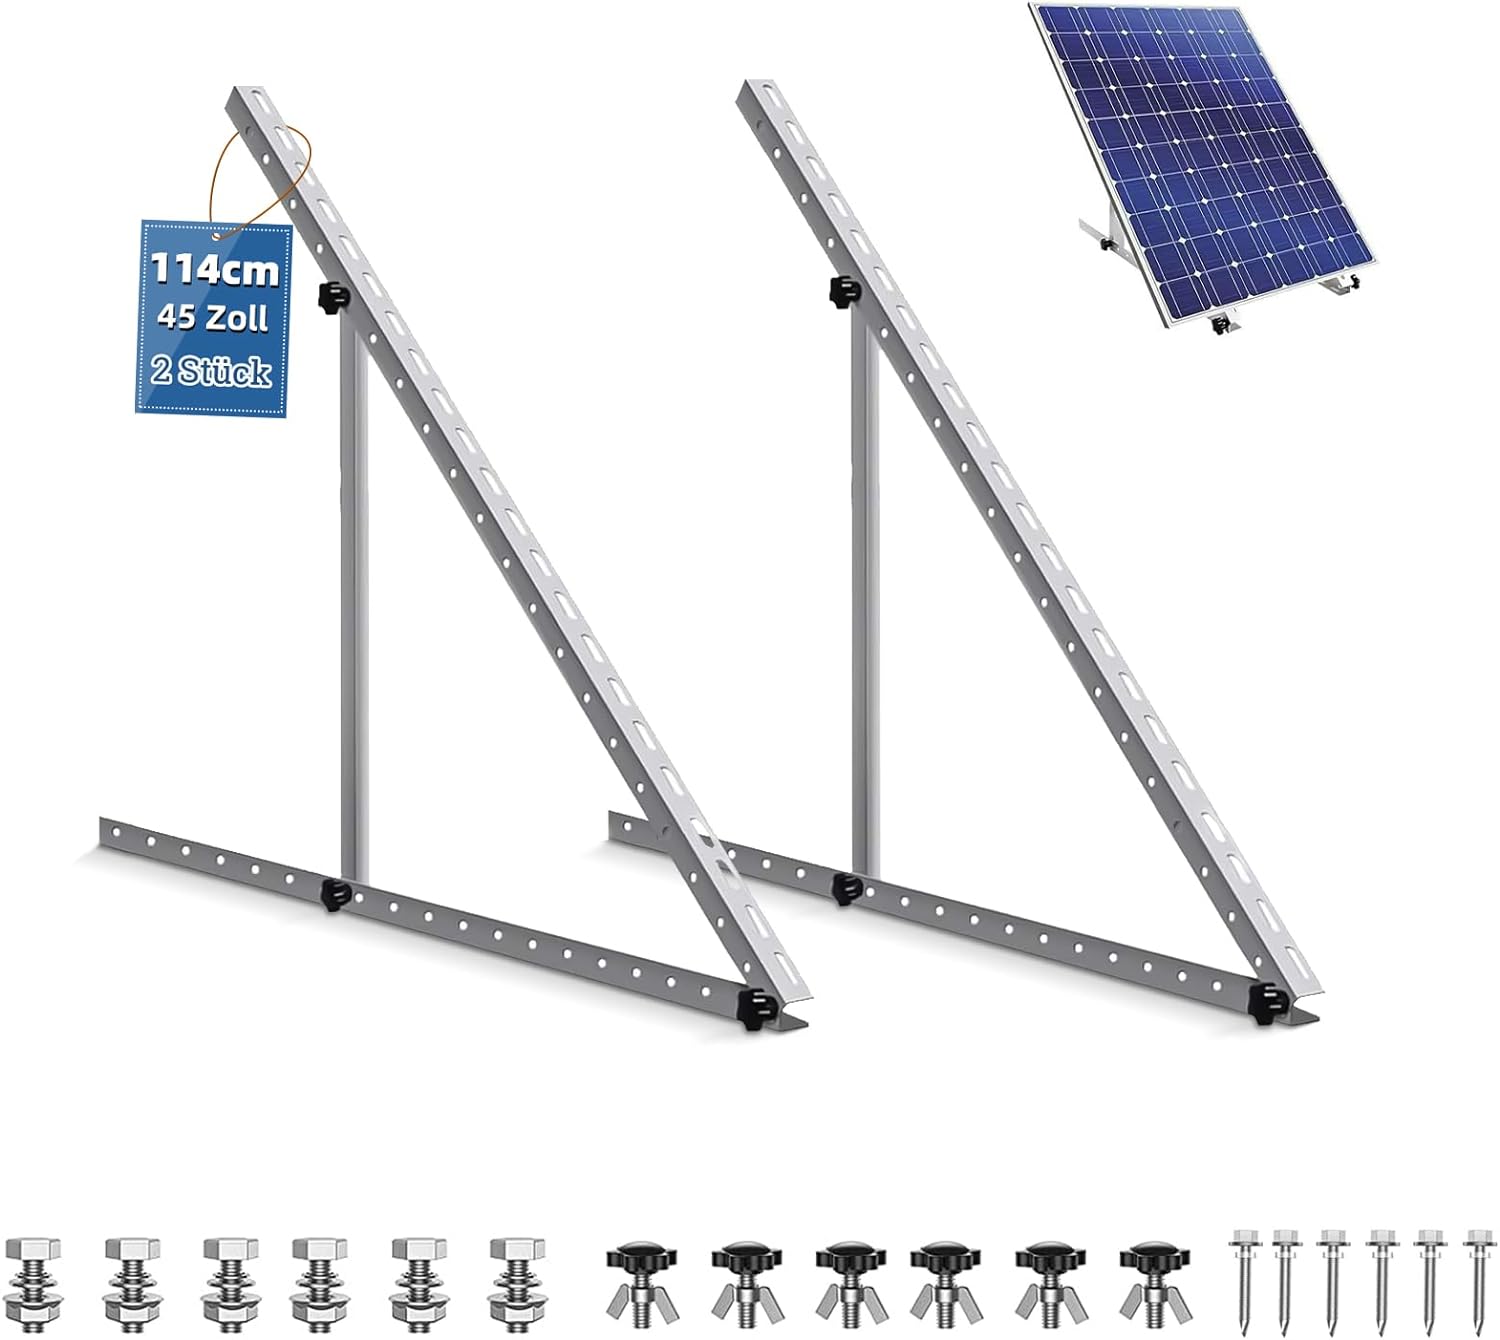 Solarmodul Halterung für 1 Modul ☀️ 45 Zoll Photovoltaik Universal Solarmodul Halterungen 114CM Balkonkraftwerk Halterung, Winkel einstellbar 0-90° für Dachhalterungen Solarmodule